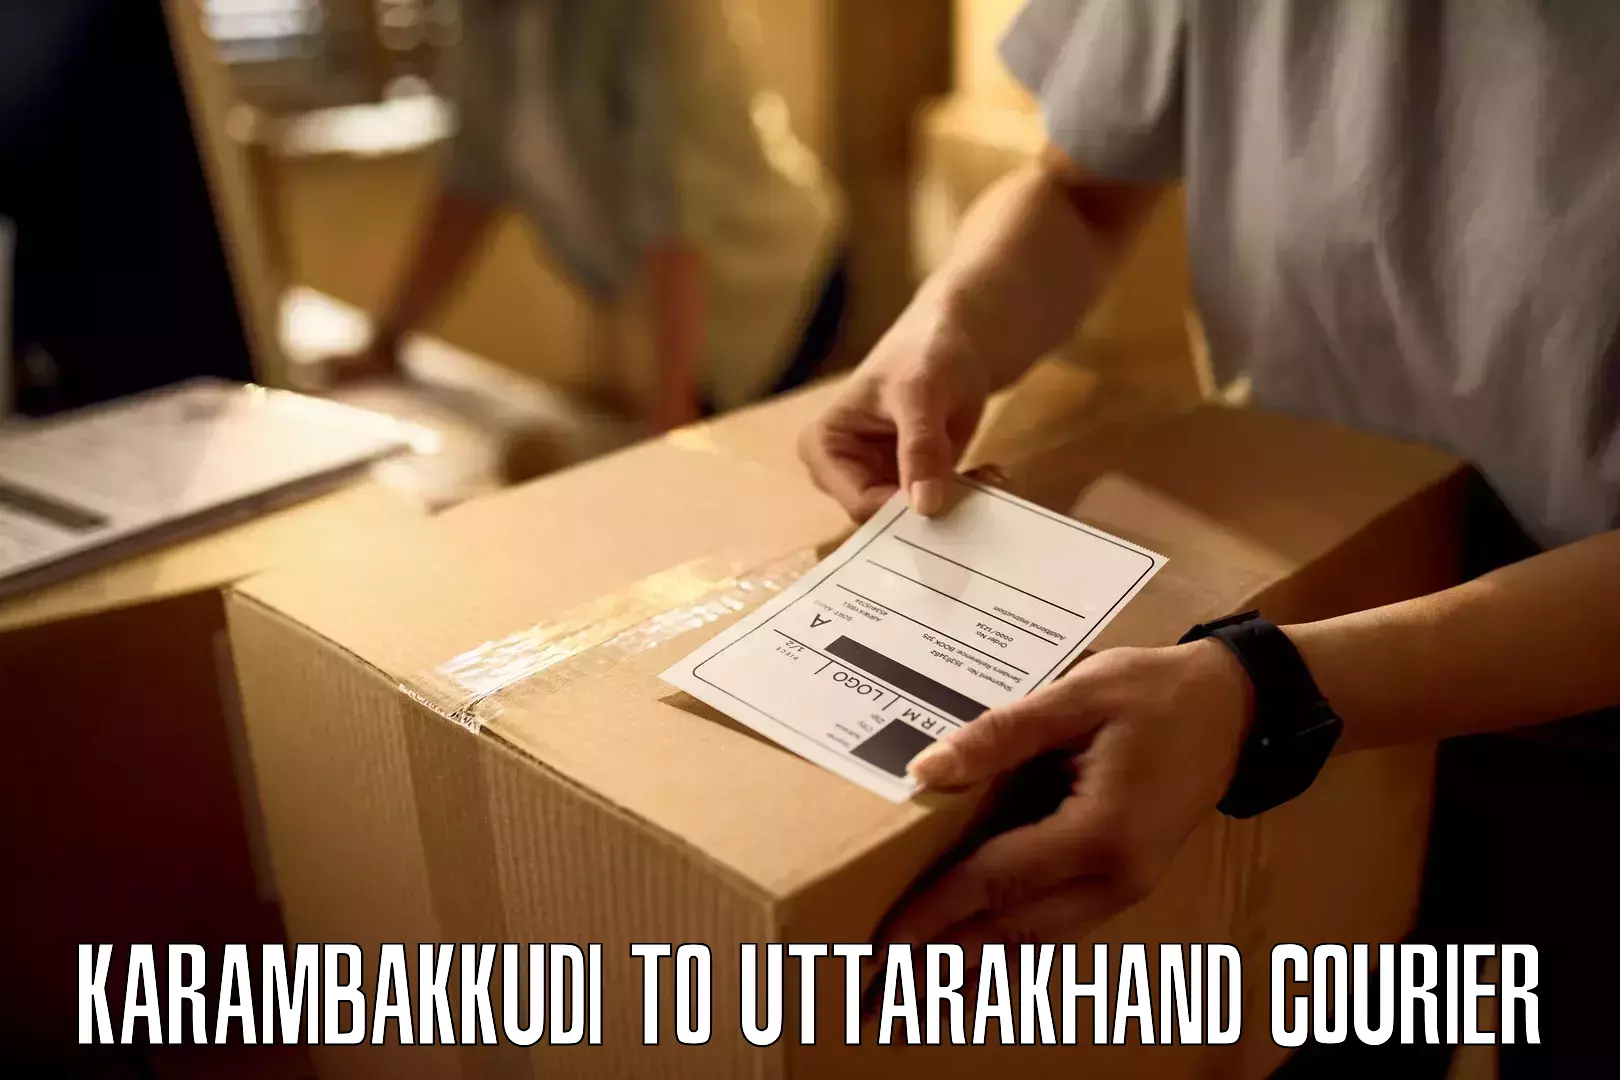 Retail shipping solutions Karambakkudi to Tanakpur